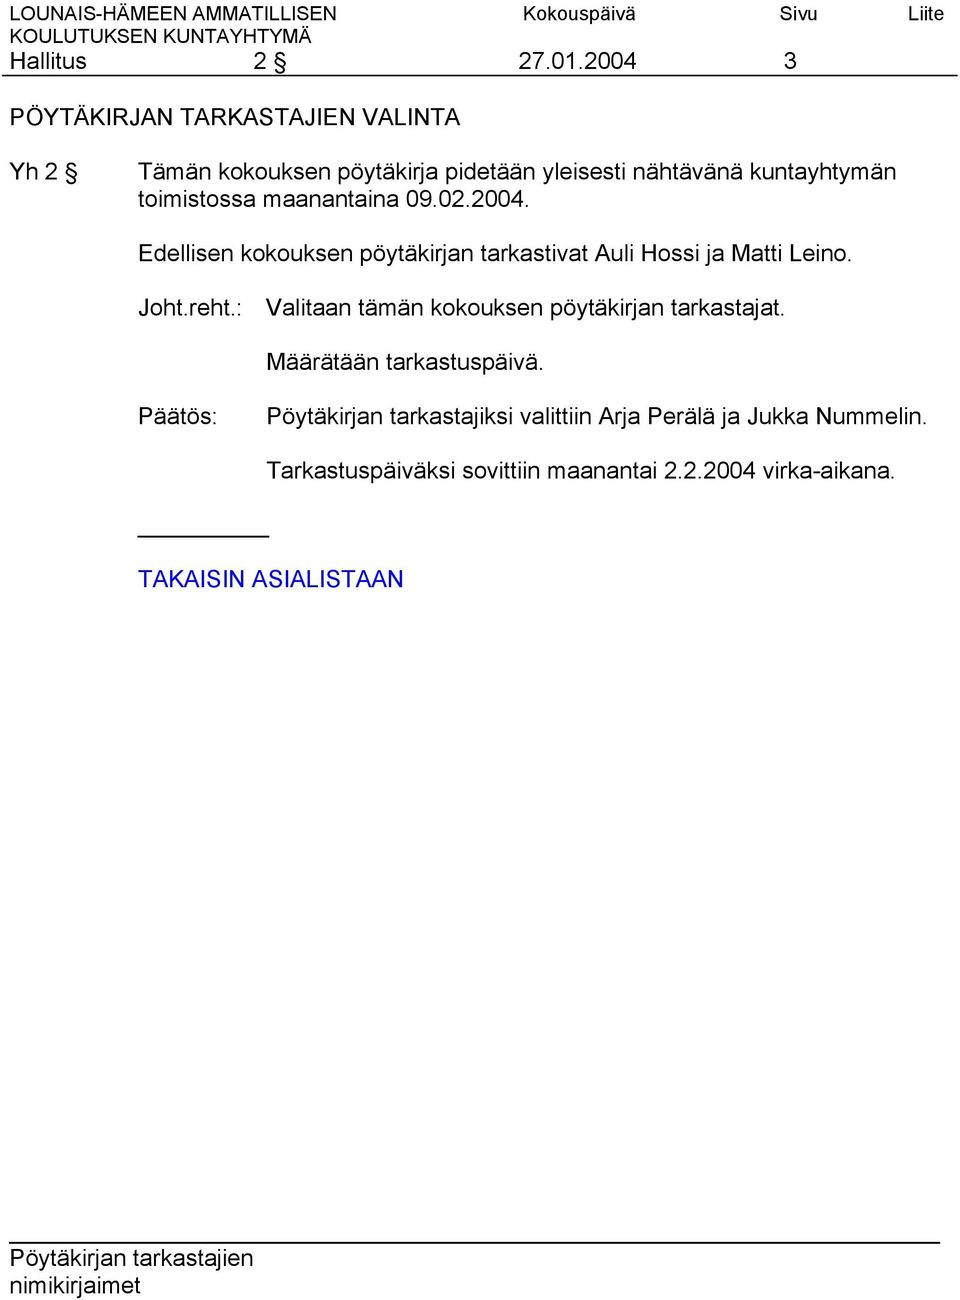 toimistossa maanantaina 09.02.2004. Edellisen kokouksen pöytäkirjan tarkastivat Auli Hossi ja Matti Leino. Joht.